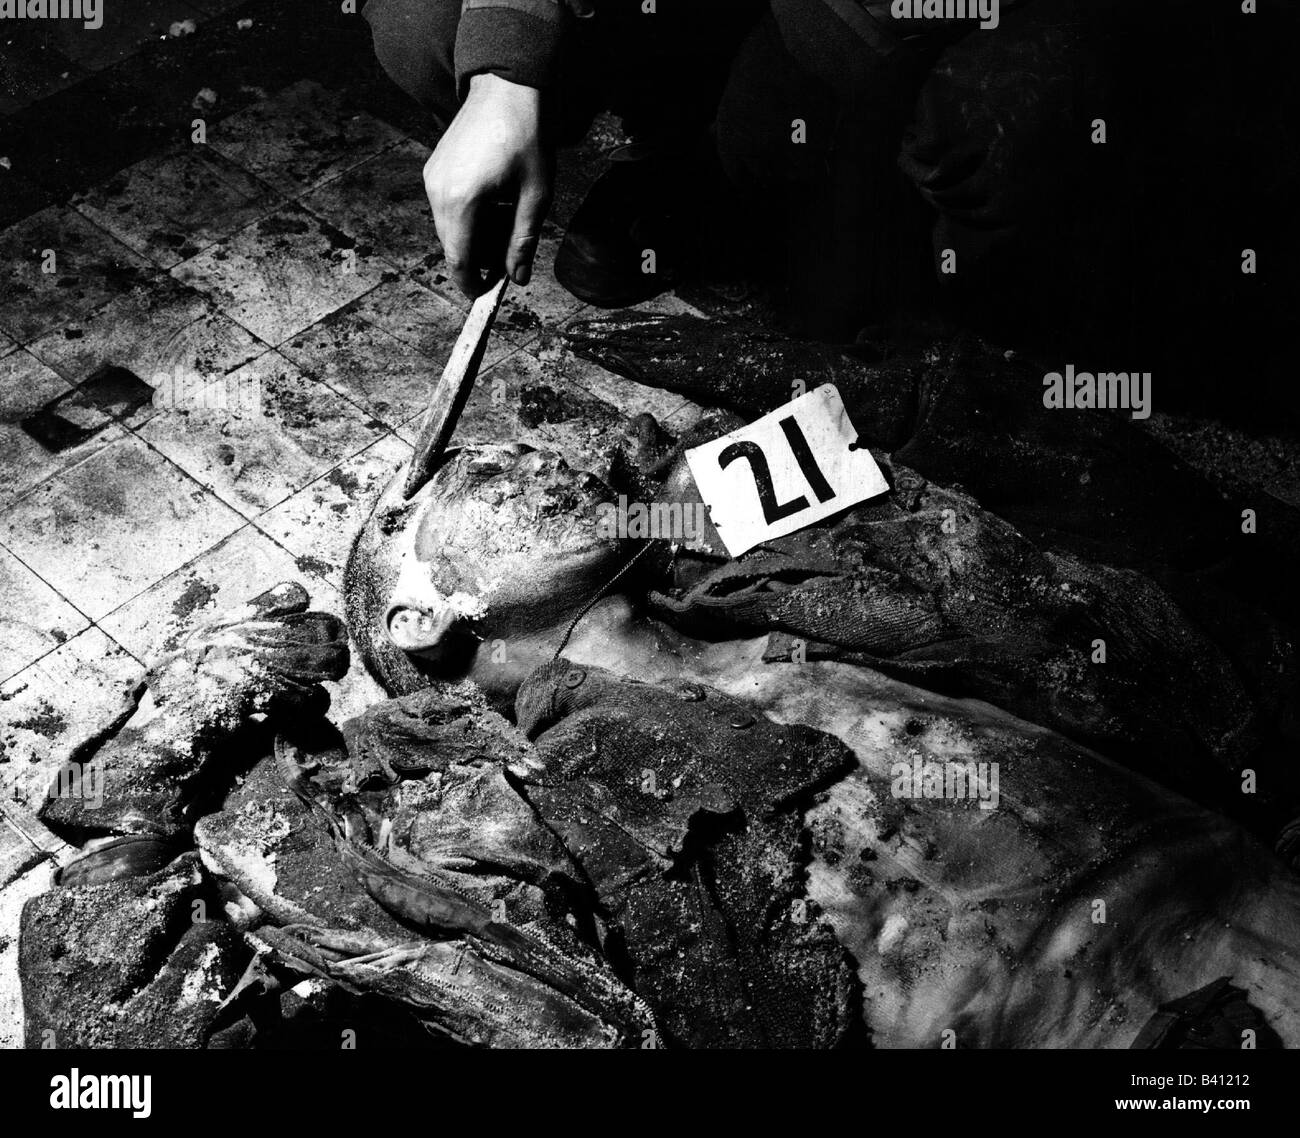 Eventi, Seconda guerra mondiale / seconda guerra mondiale, crimini di guerra, massacro di Malmedy 17.12.1944, cadavere di un soldato degli Stati Uniti, colpo di testa, Foto Stock